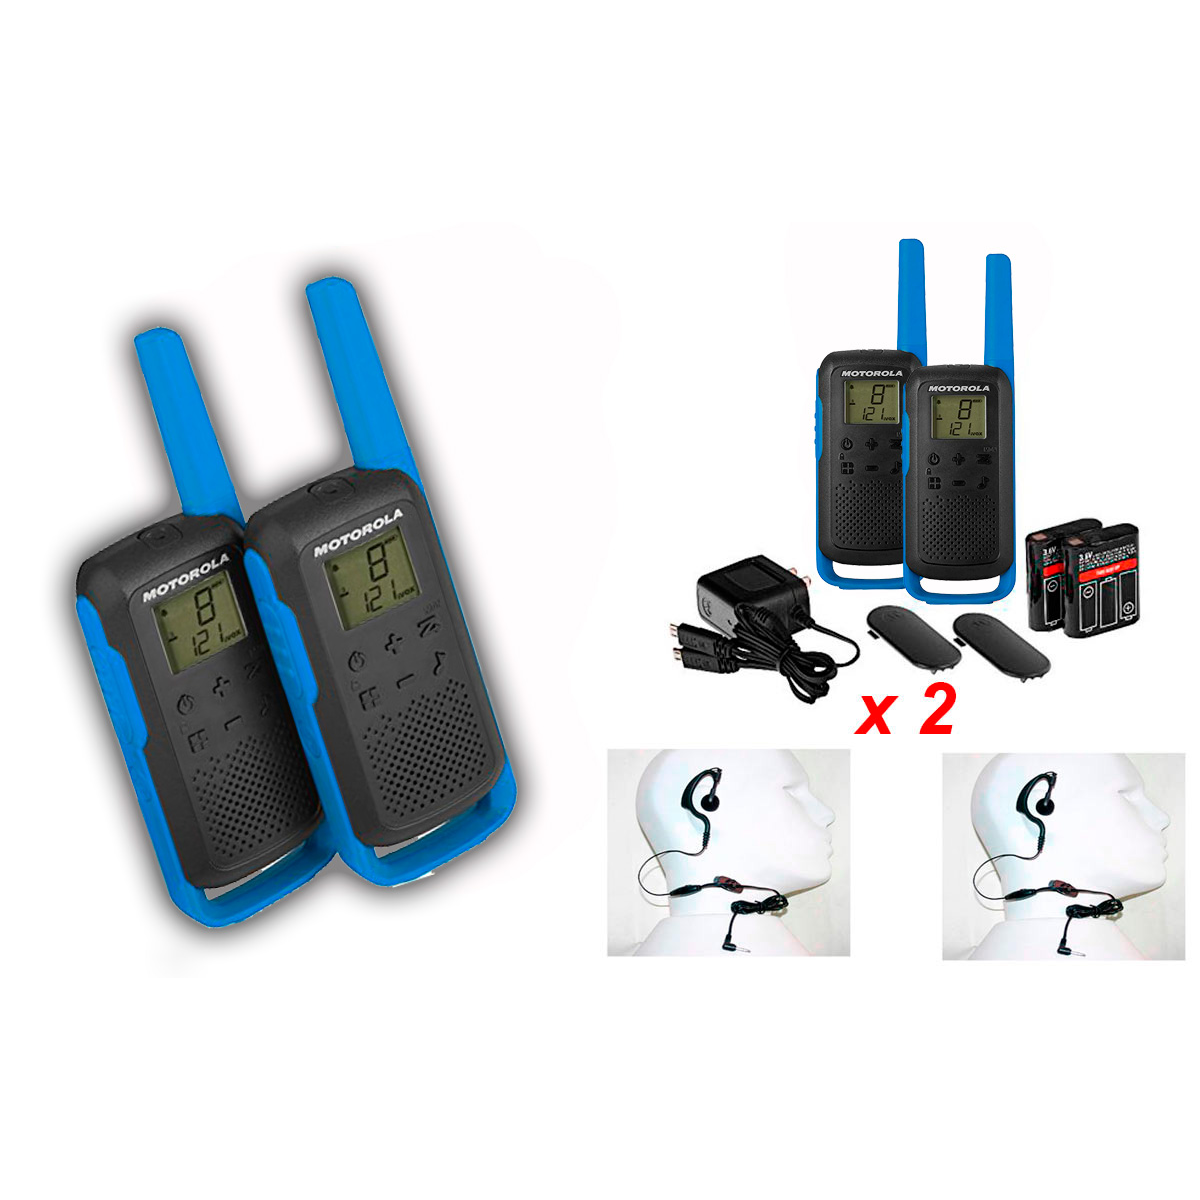 Motorola TKLR T62 parella de walkies s lliure PMR446 16 canals + 2 pinganillos